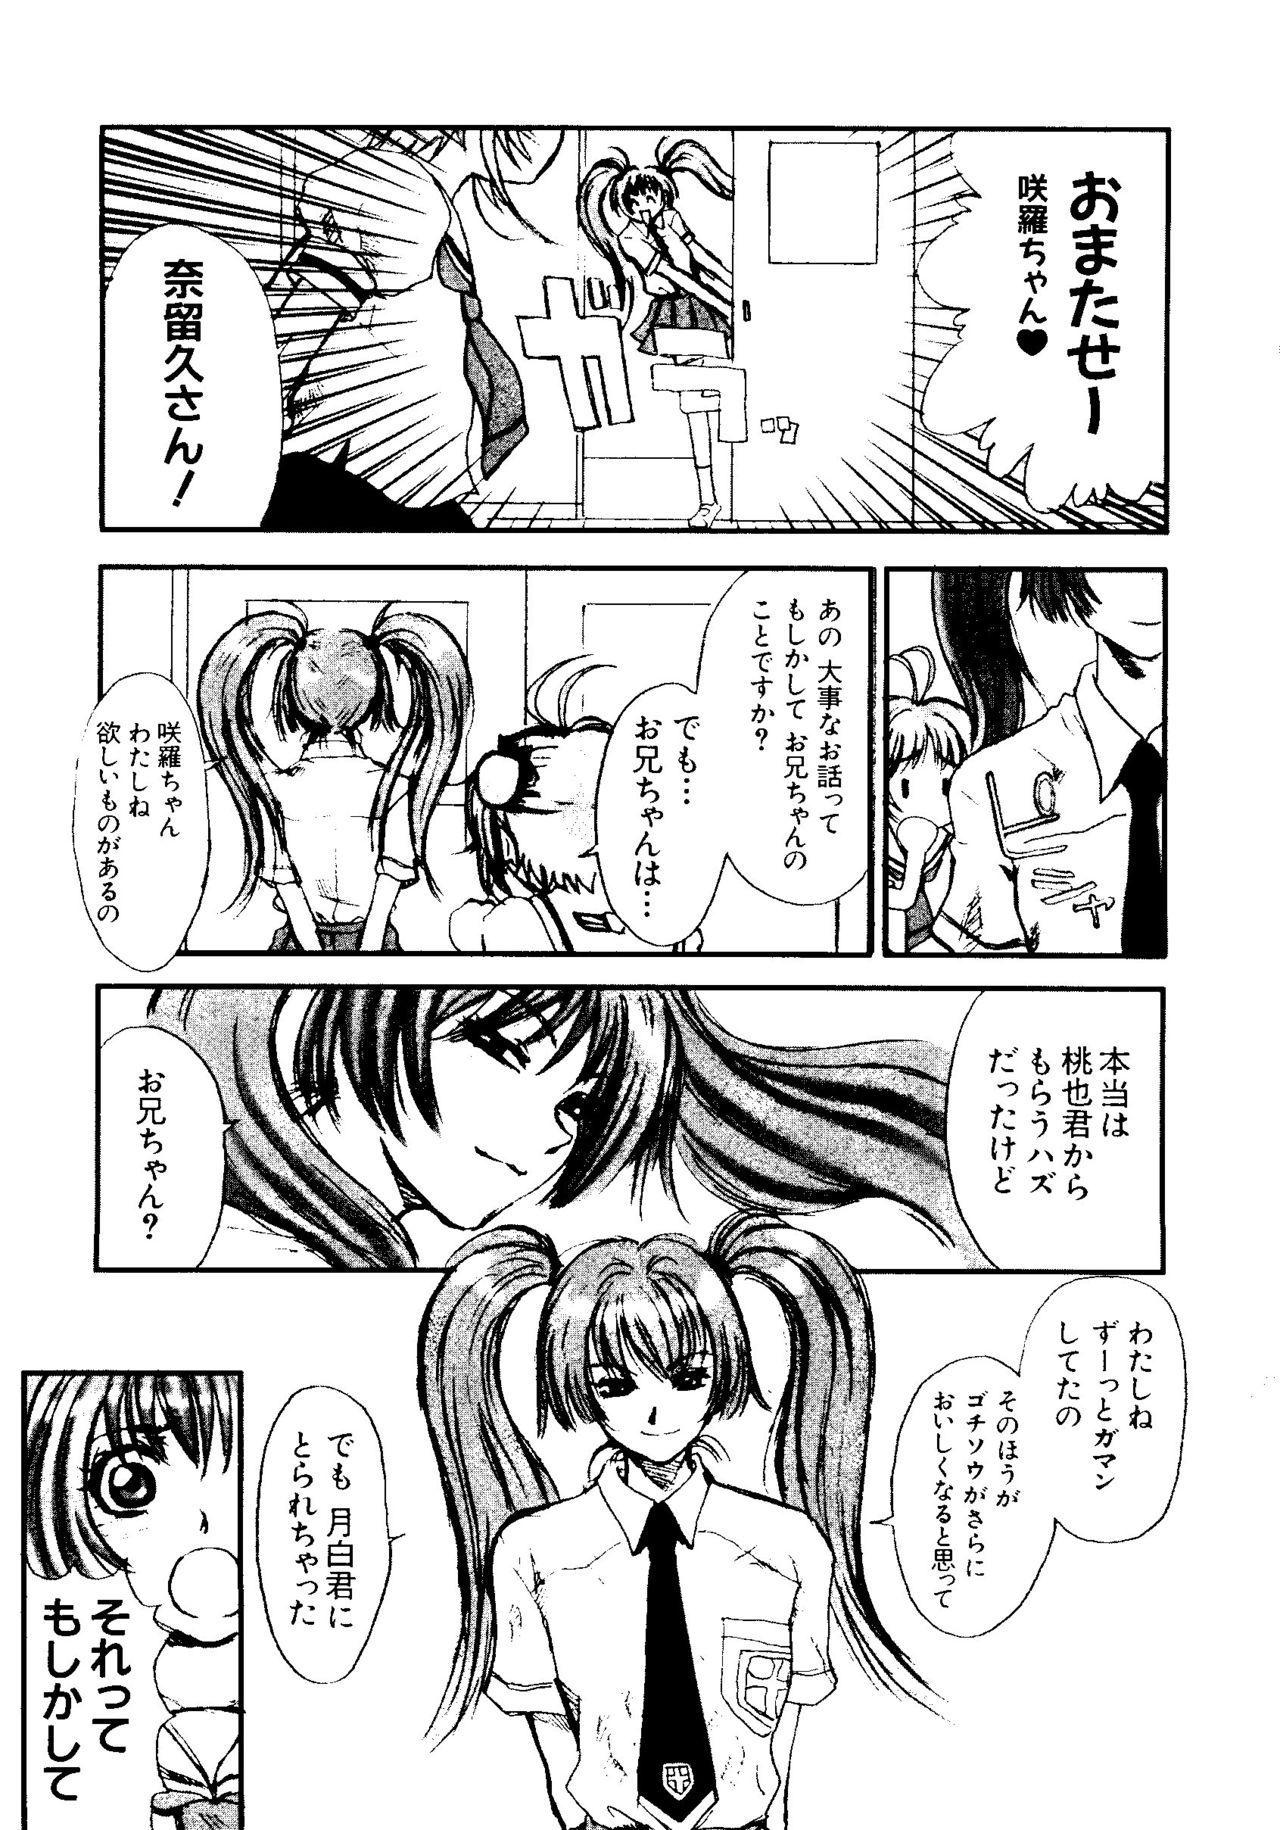 Penis Sucking Love Chara Taizen No. 5 - Cardcaptor sakura Ojamajo doremi Digimon adventure Ecoko Azuki chan Hard Core Free Porn - Page 8